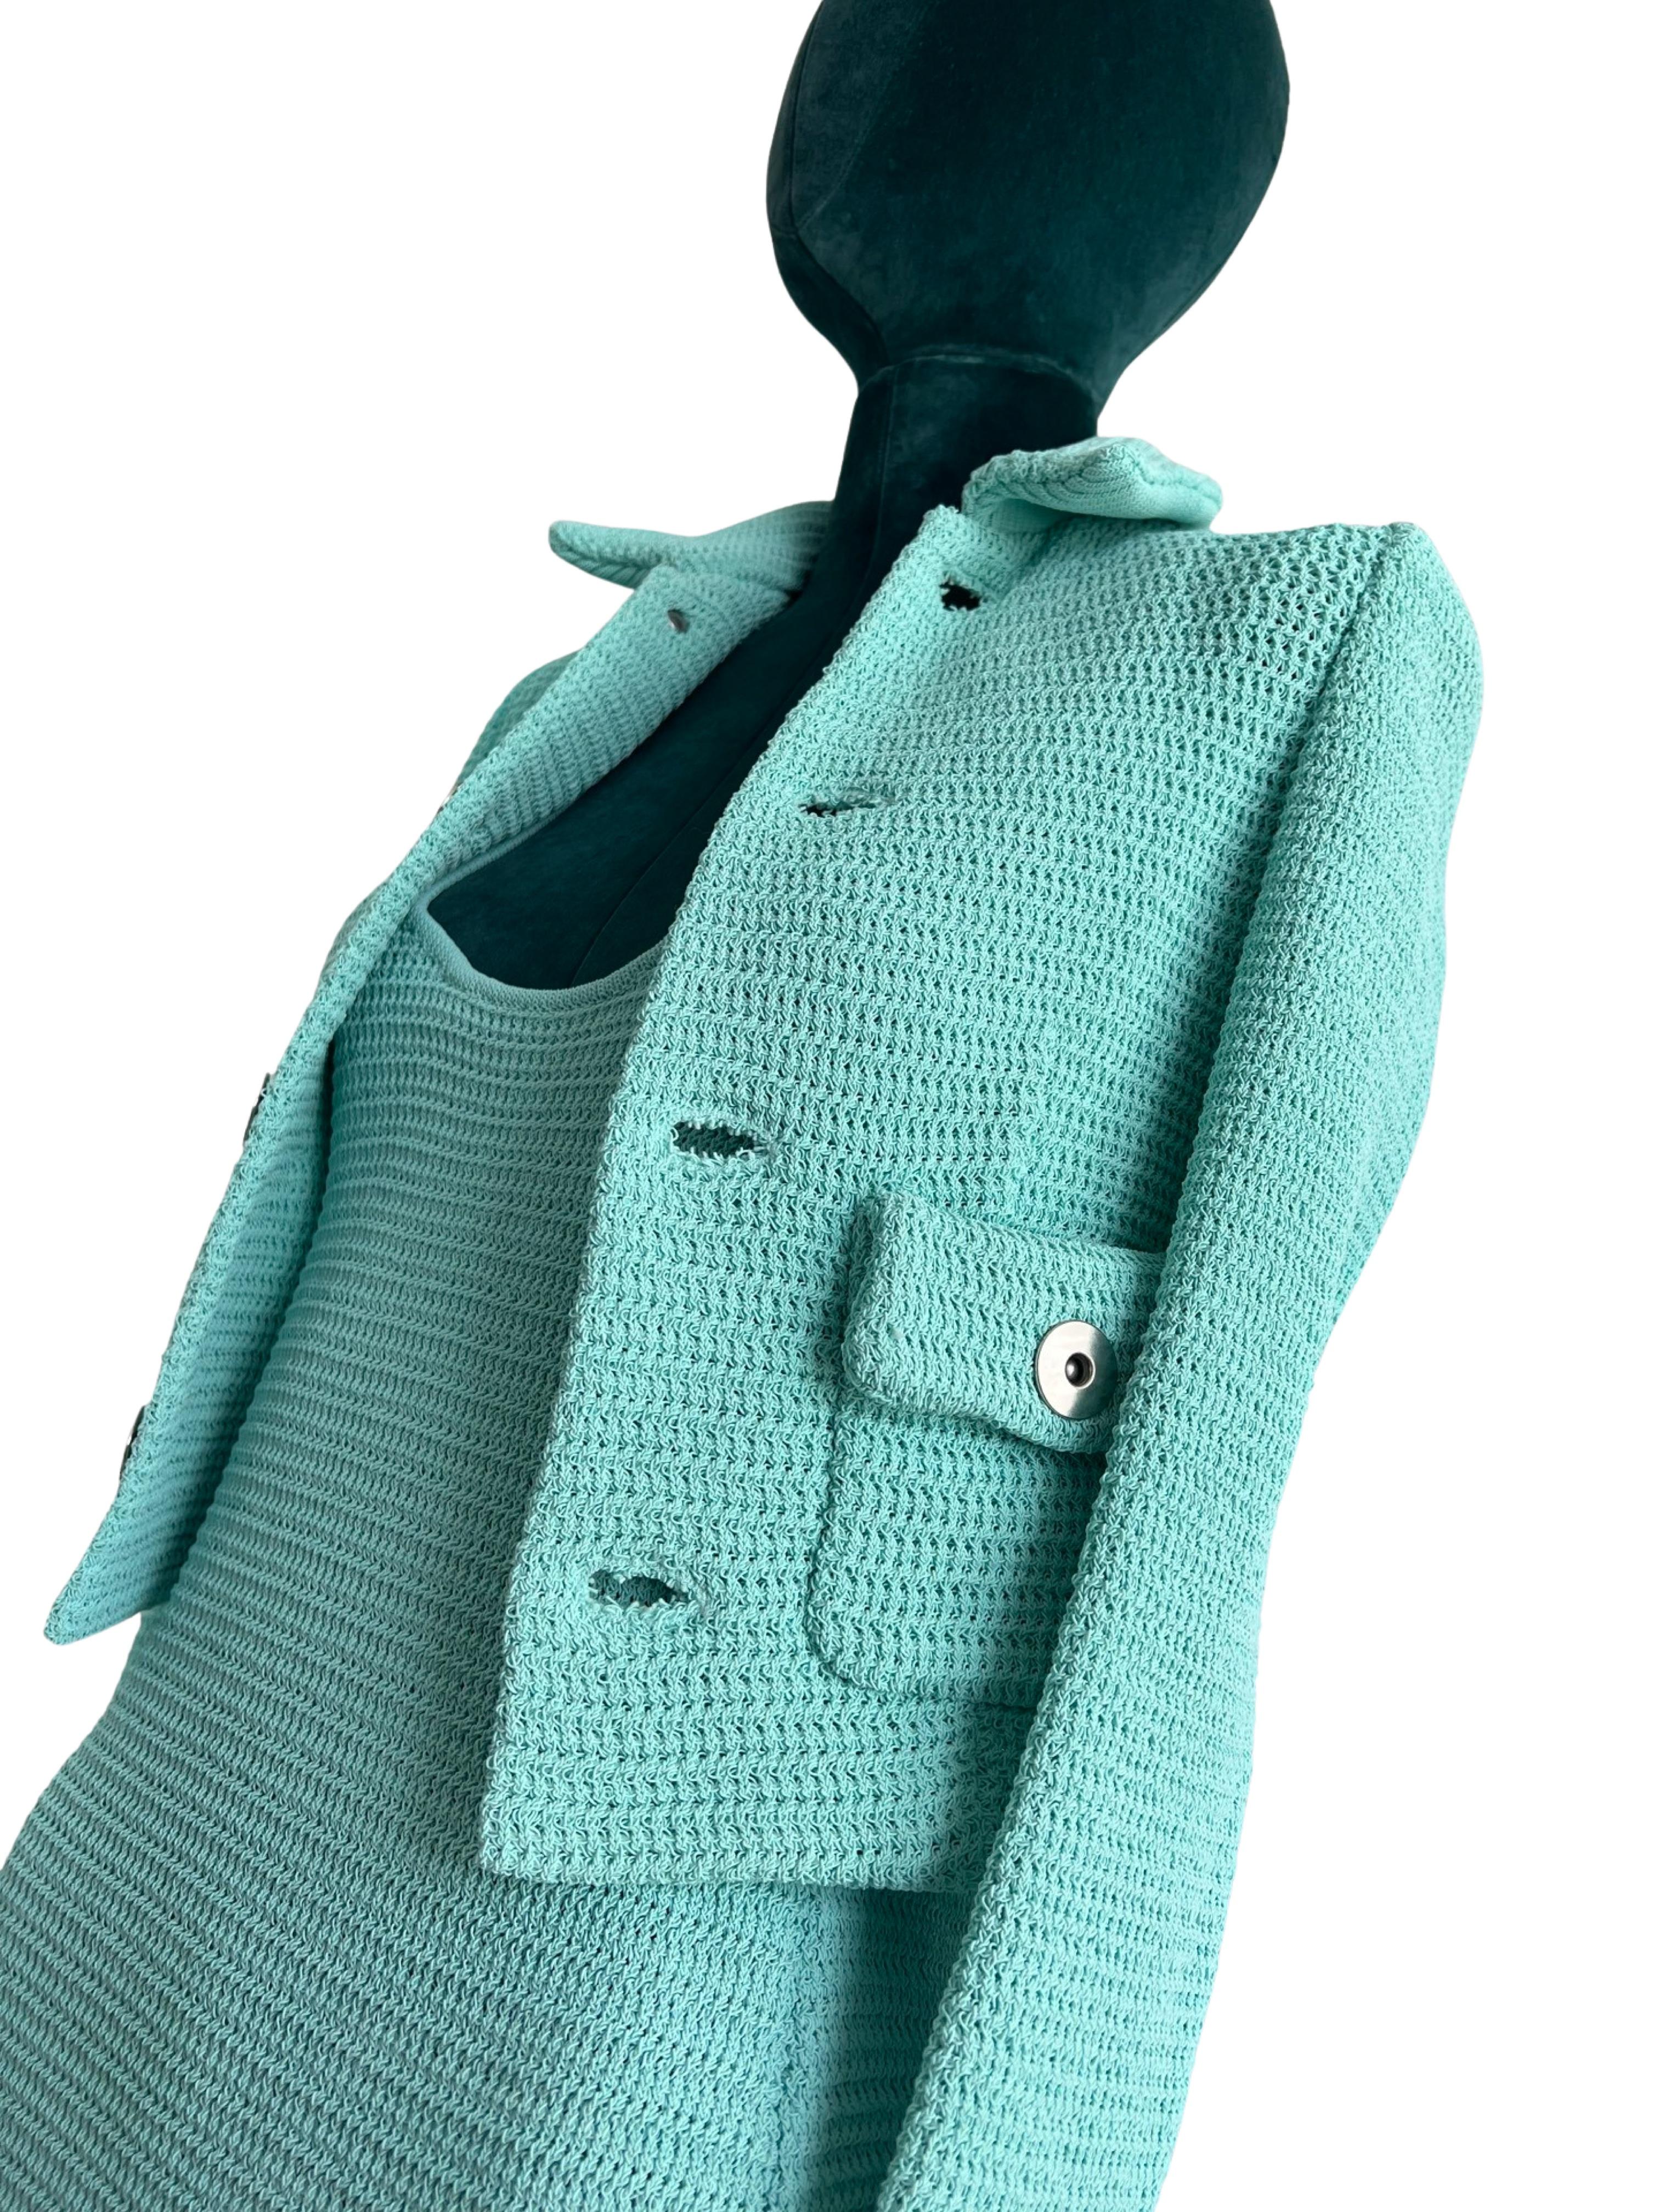 Bottega Veneta Turquoise  Racked Rib Knit Dress and Jacket size S  For Sale 4